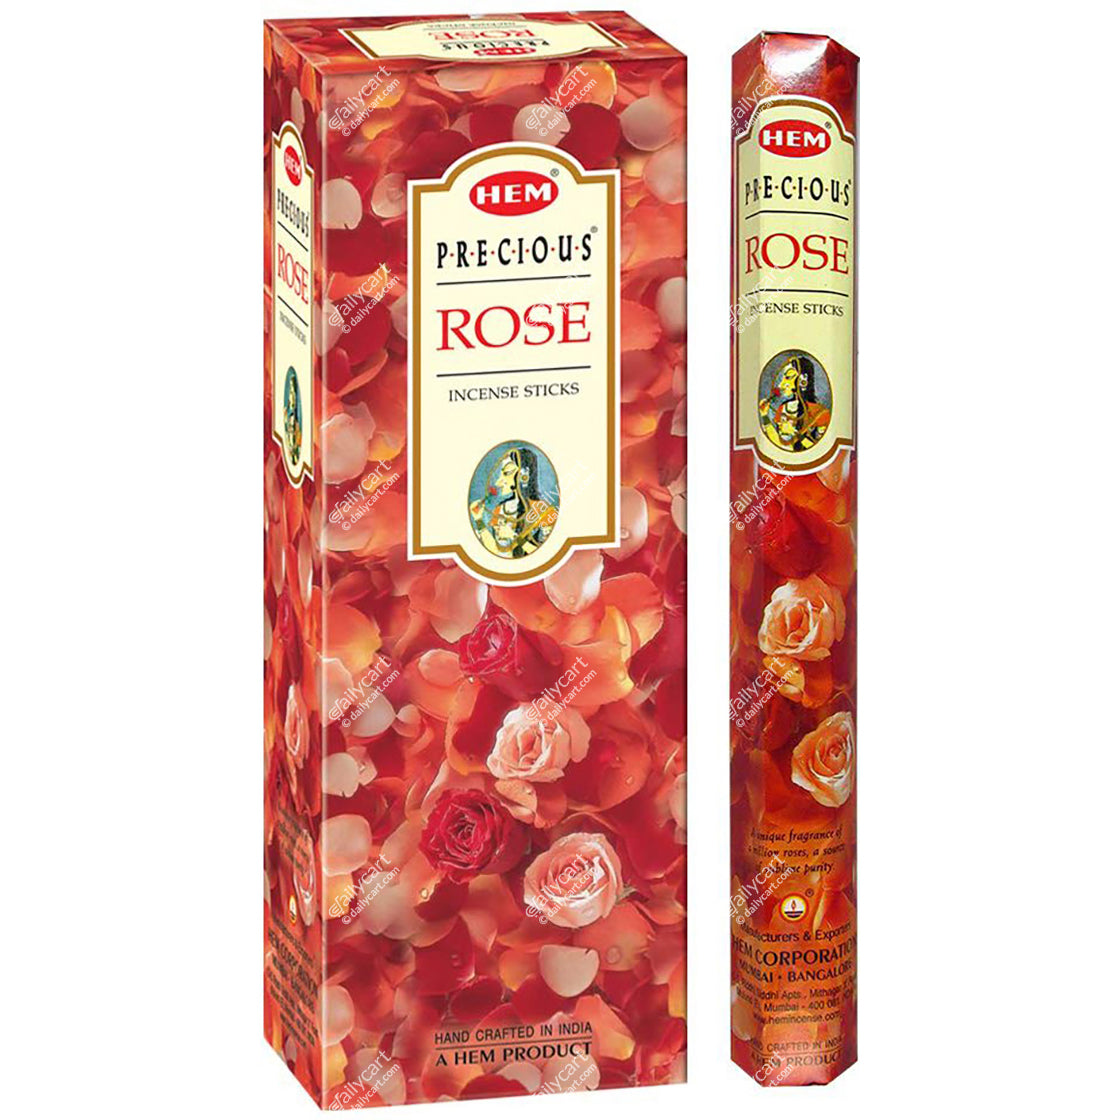 Hem Precious Rose Incense Sticks, 20 Sticks, Pack of 6 Tubes